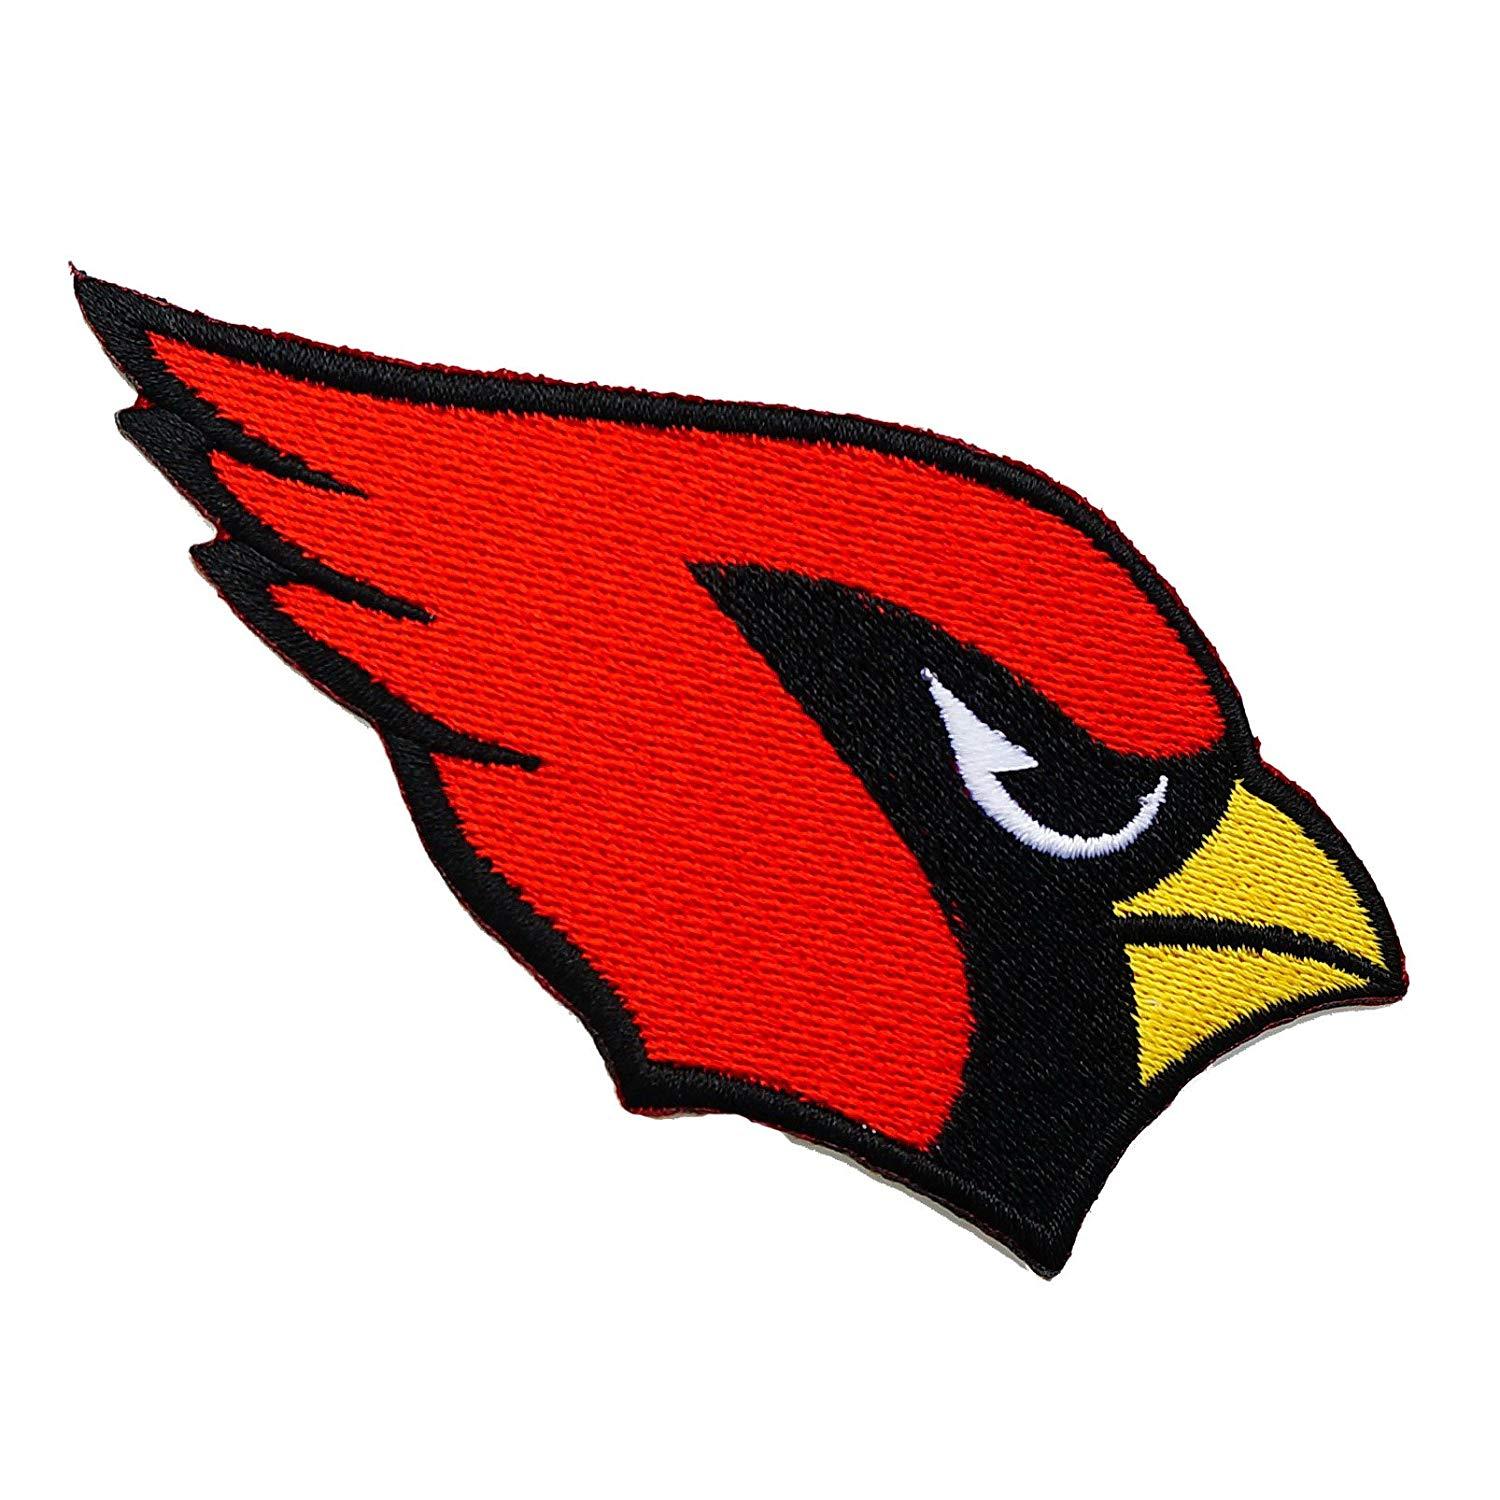 Cardinal Bird Football Logo - Amazon.com: Arizona Cardinals NFL Embroidered Iron on Patch Logo ...